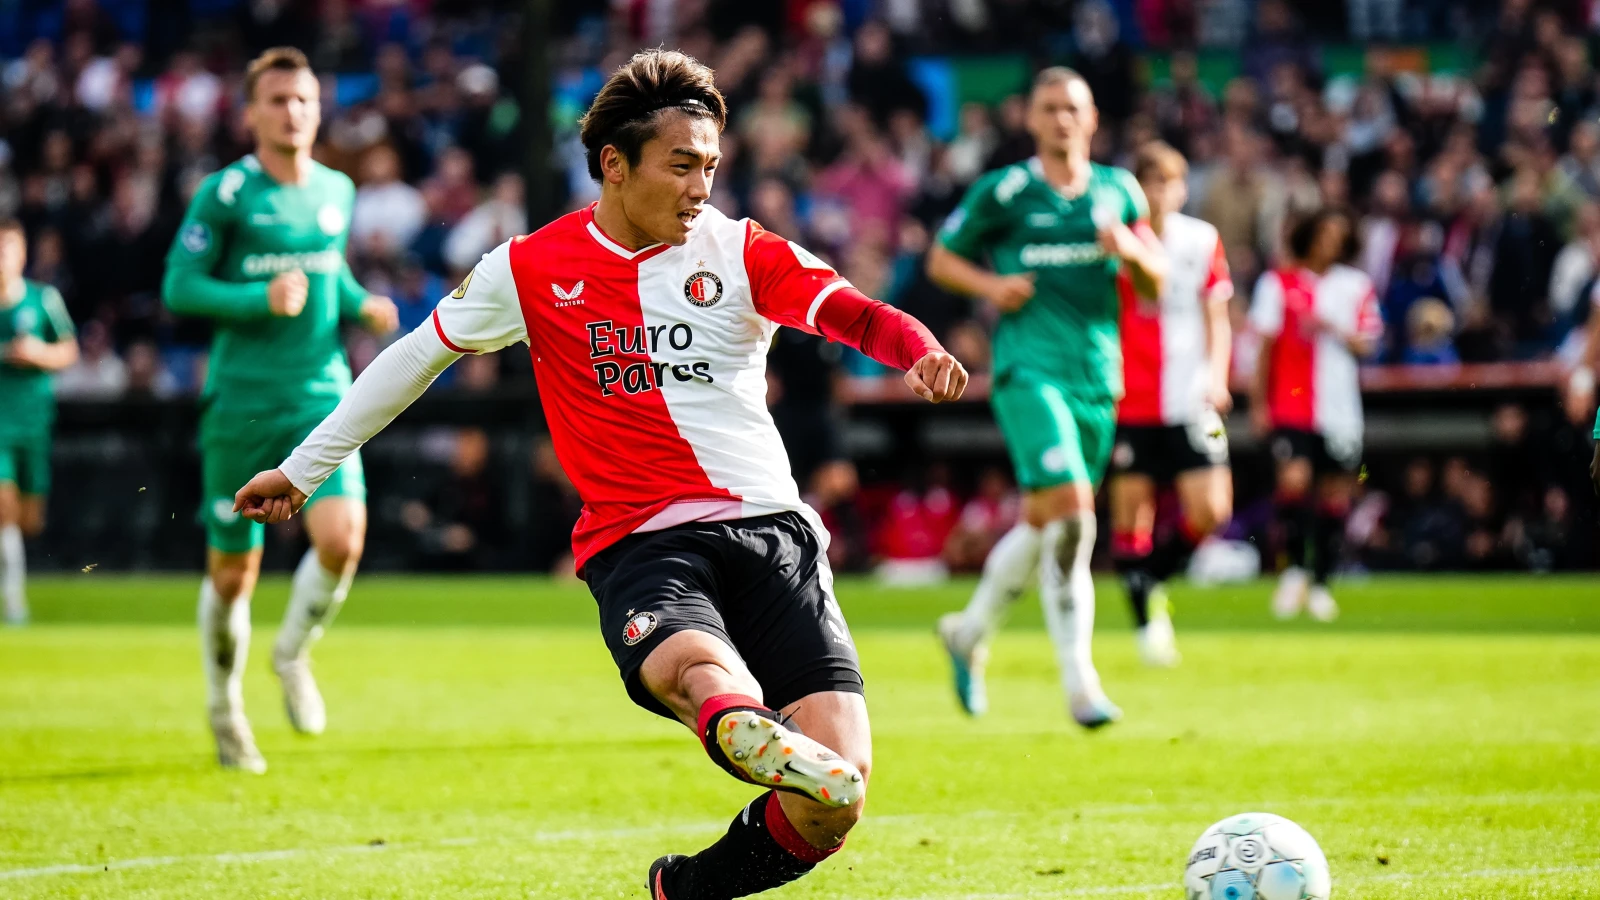 'Feyenoord wil dinsdag oefenwedstrijd spelen om Ueda minuten te laten maken'